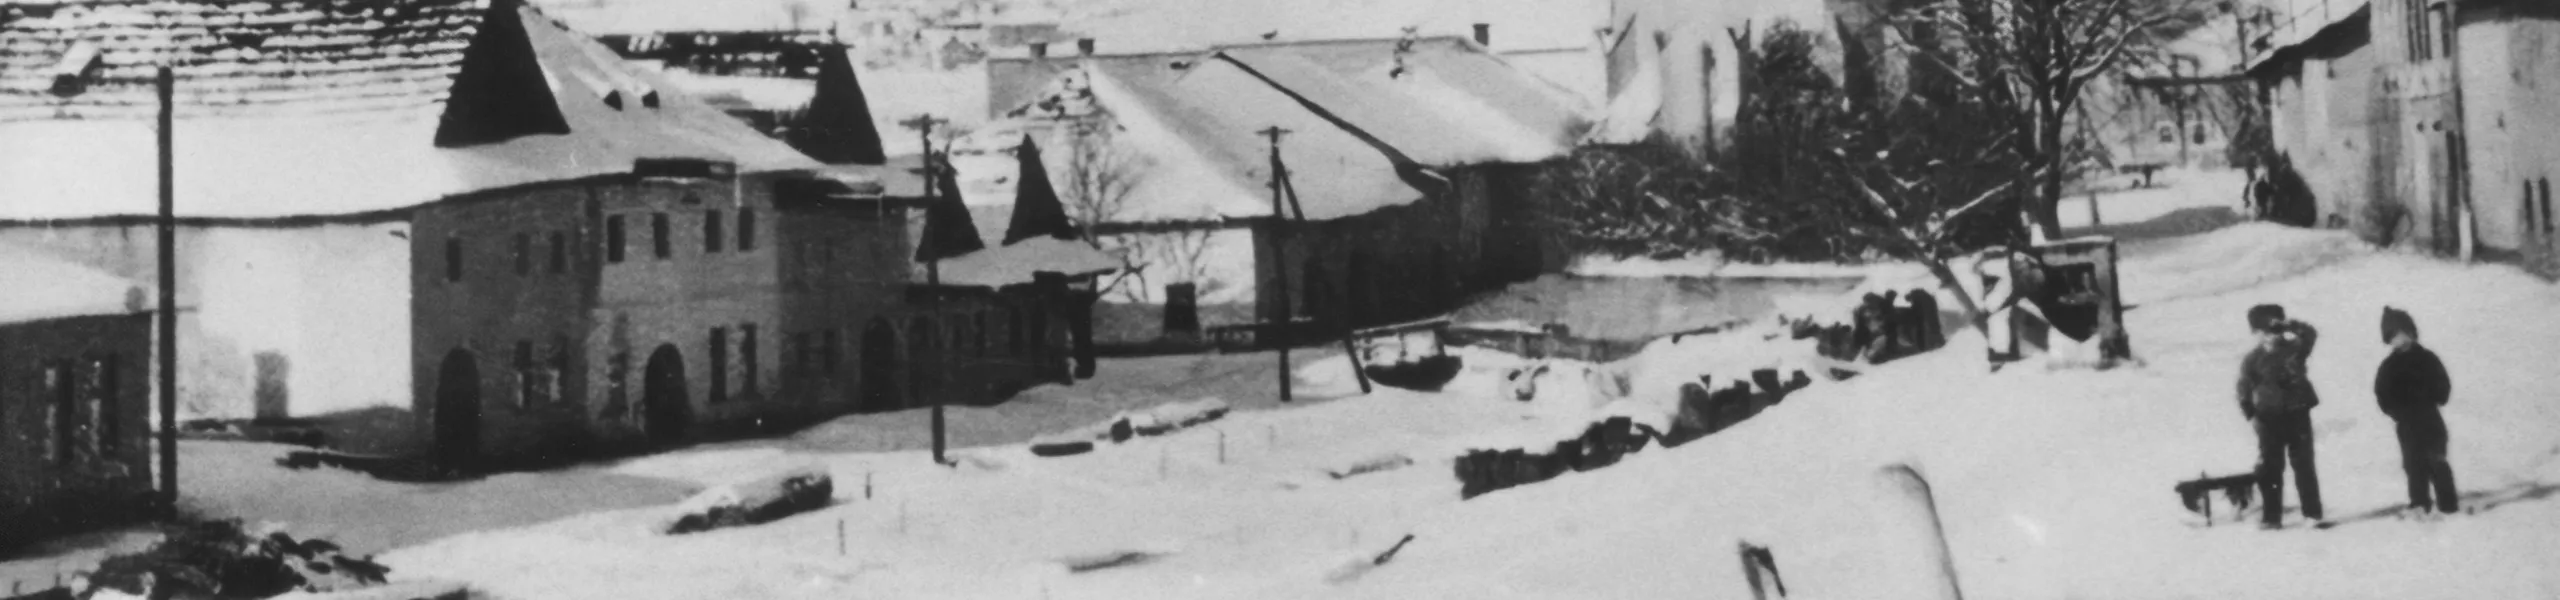 Obec Ruskinovce v zime. (historická fotografia z archívu Múzea Spiša)